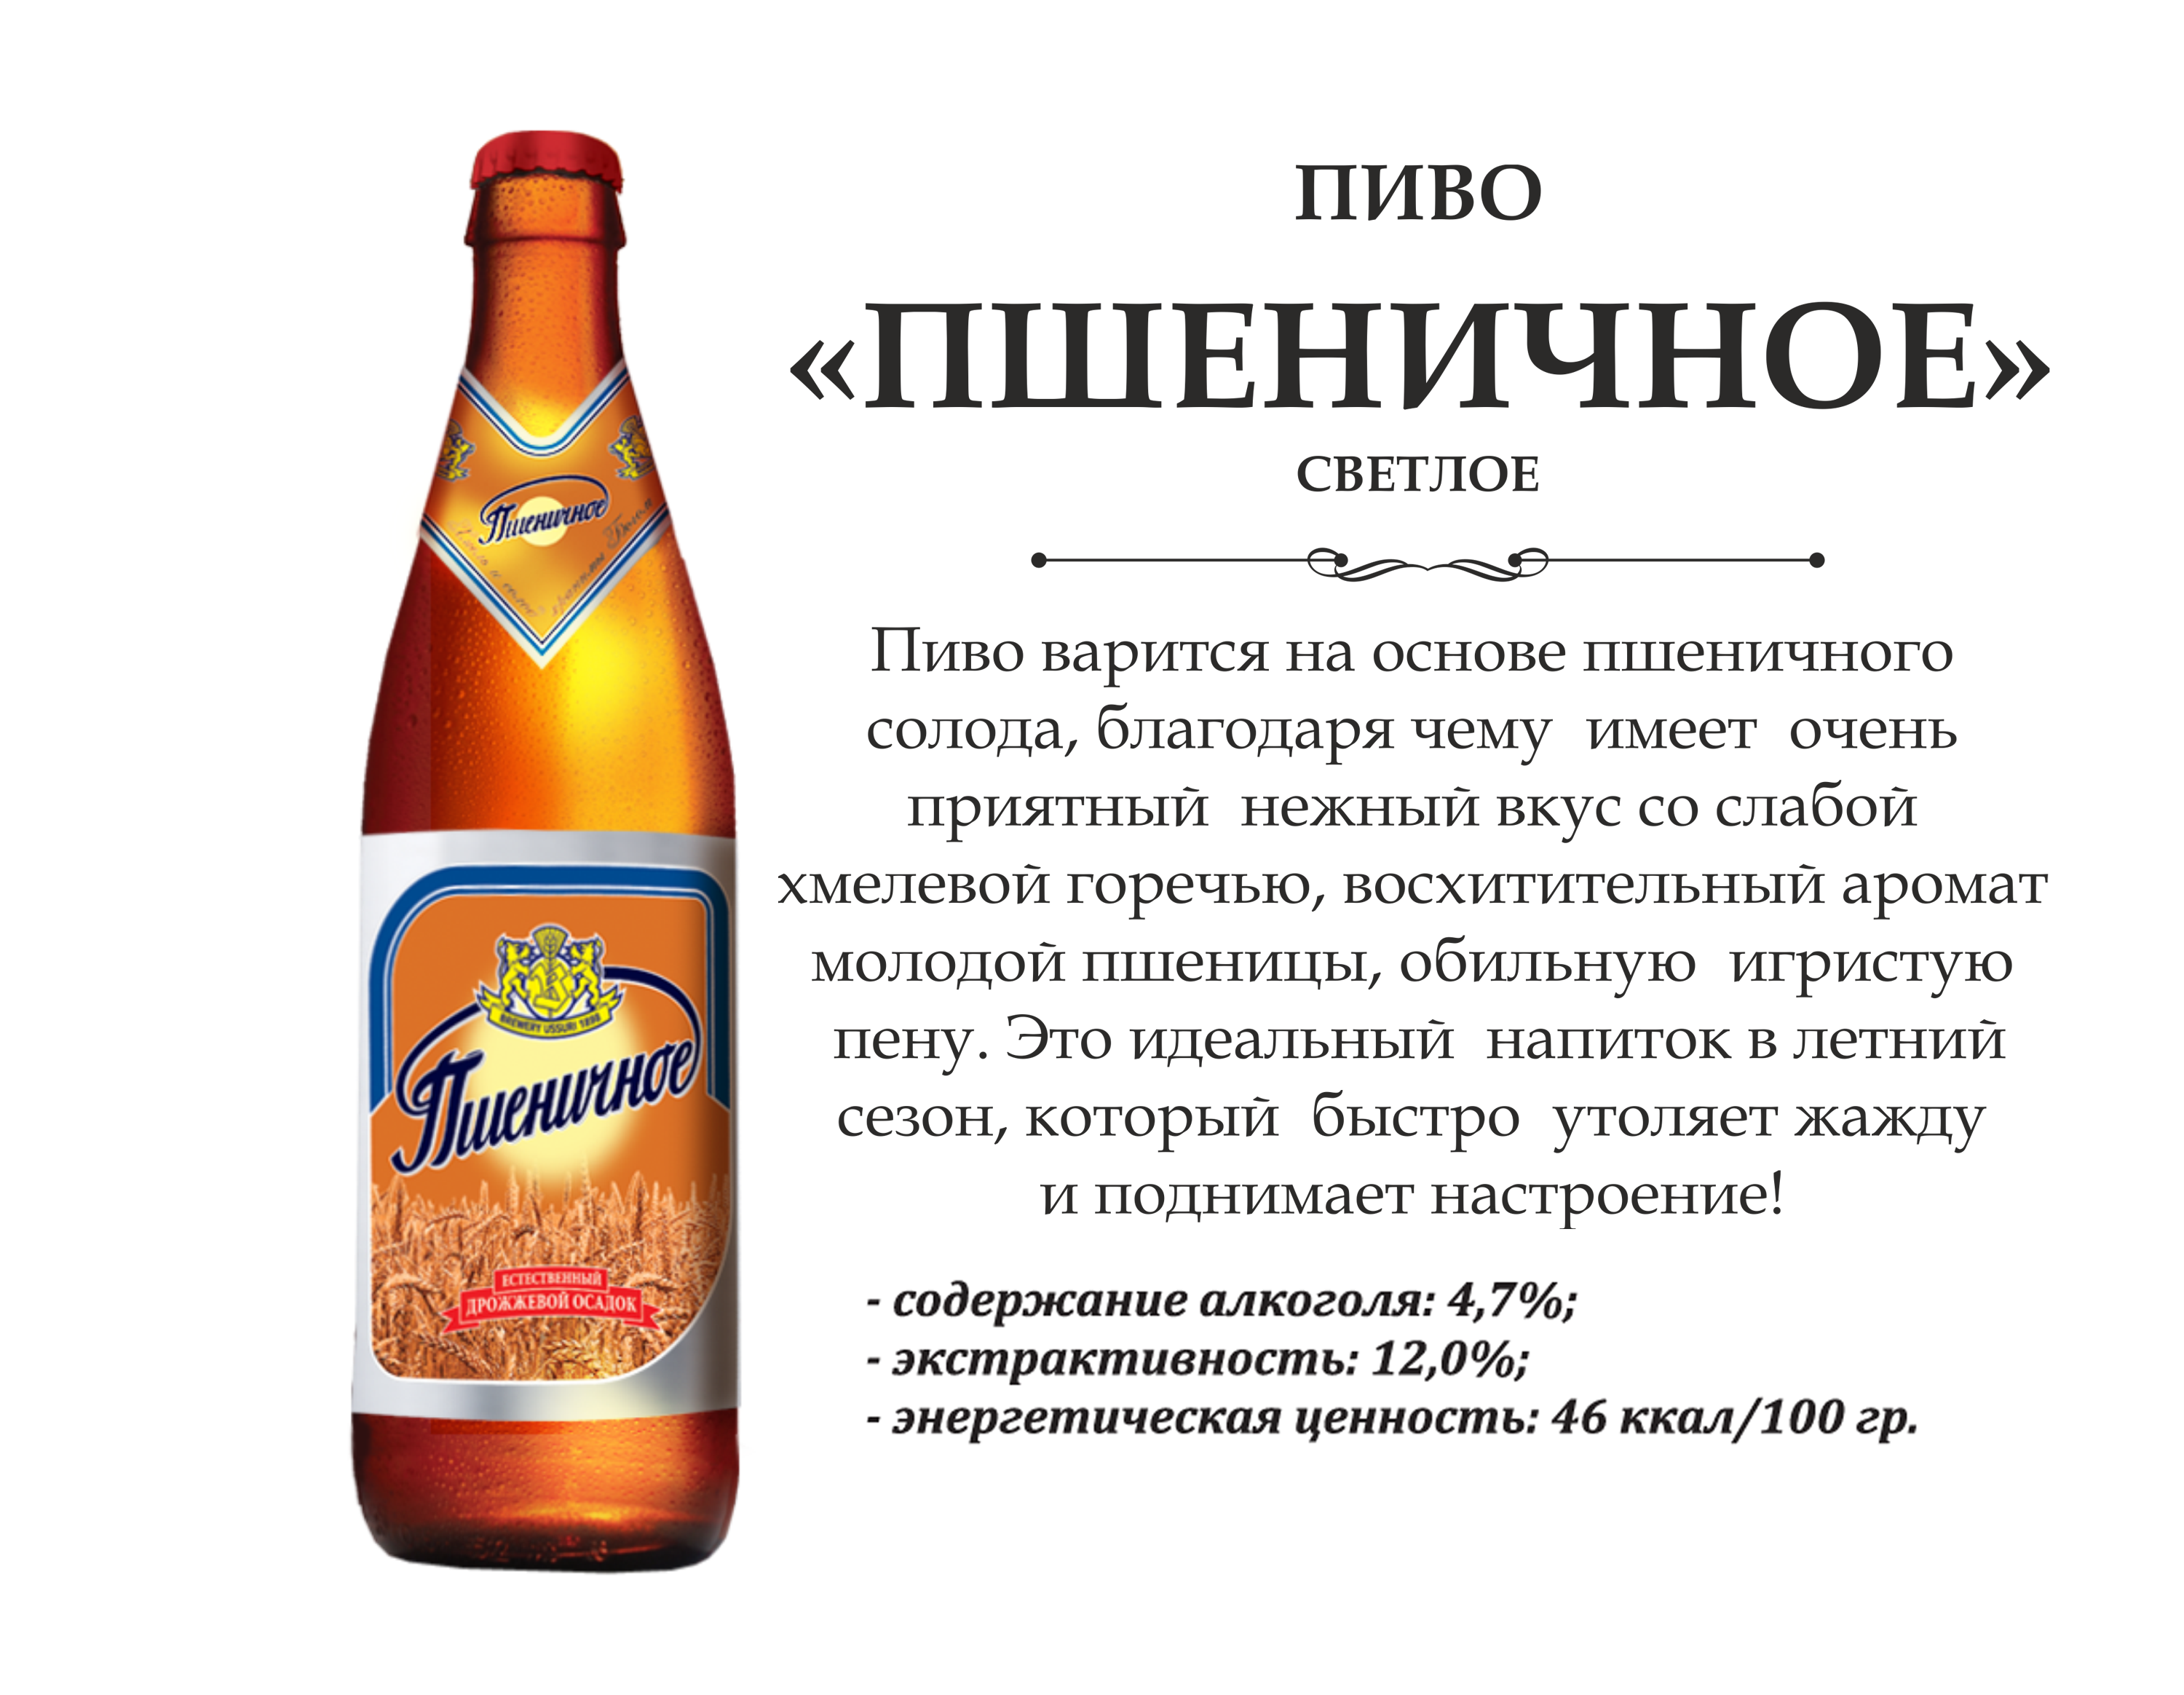 Пшеничное пиво - popivy.ru -  расшарь свою пивную. портал о пиве.